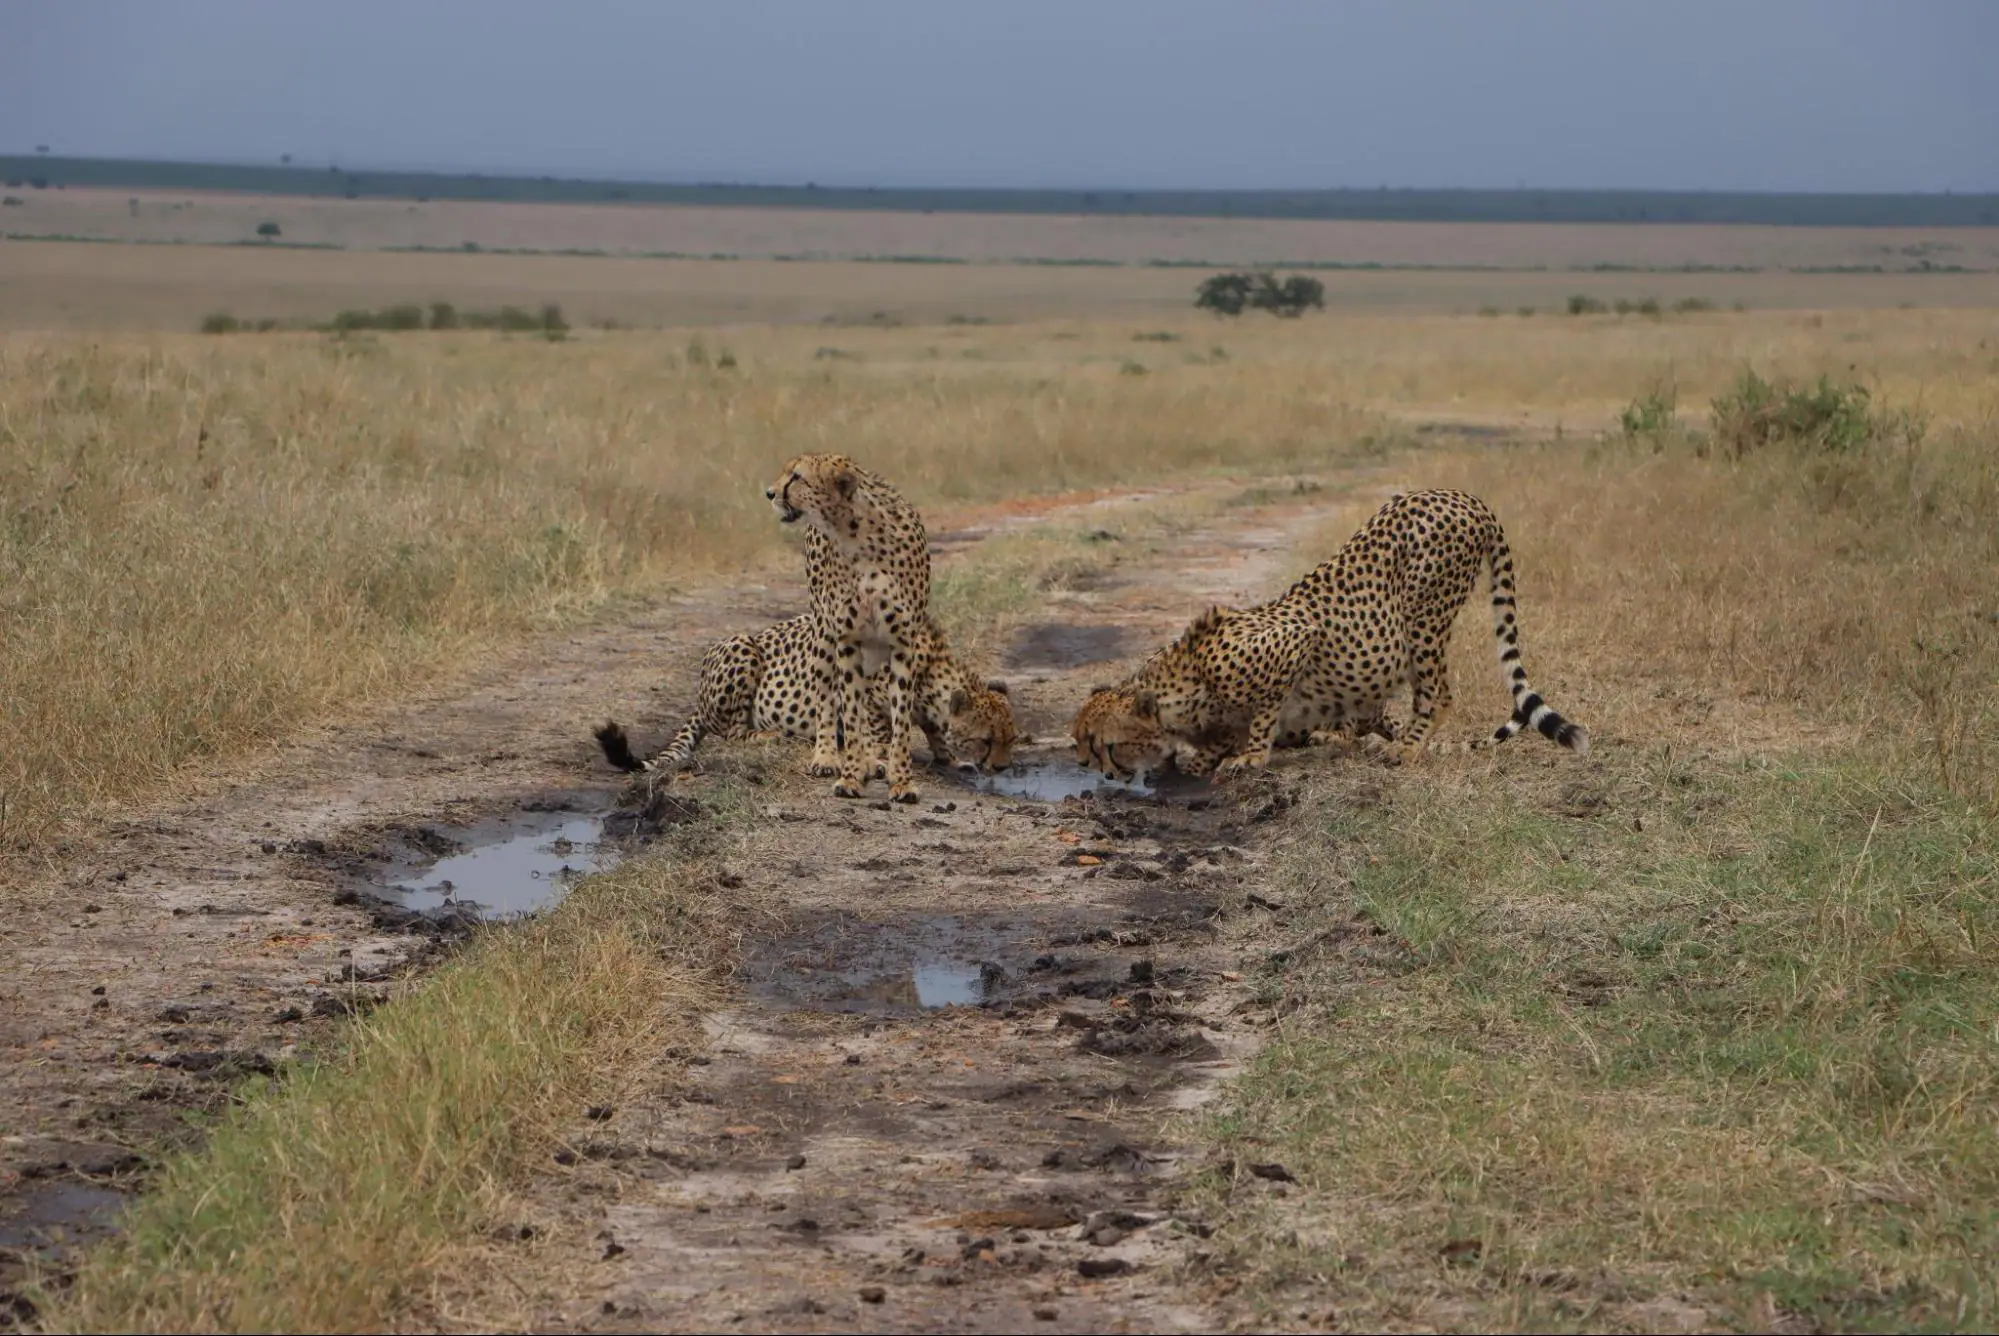 Cheetah drinking water during this 10 days Kenya safari.